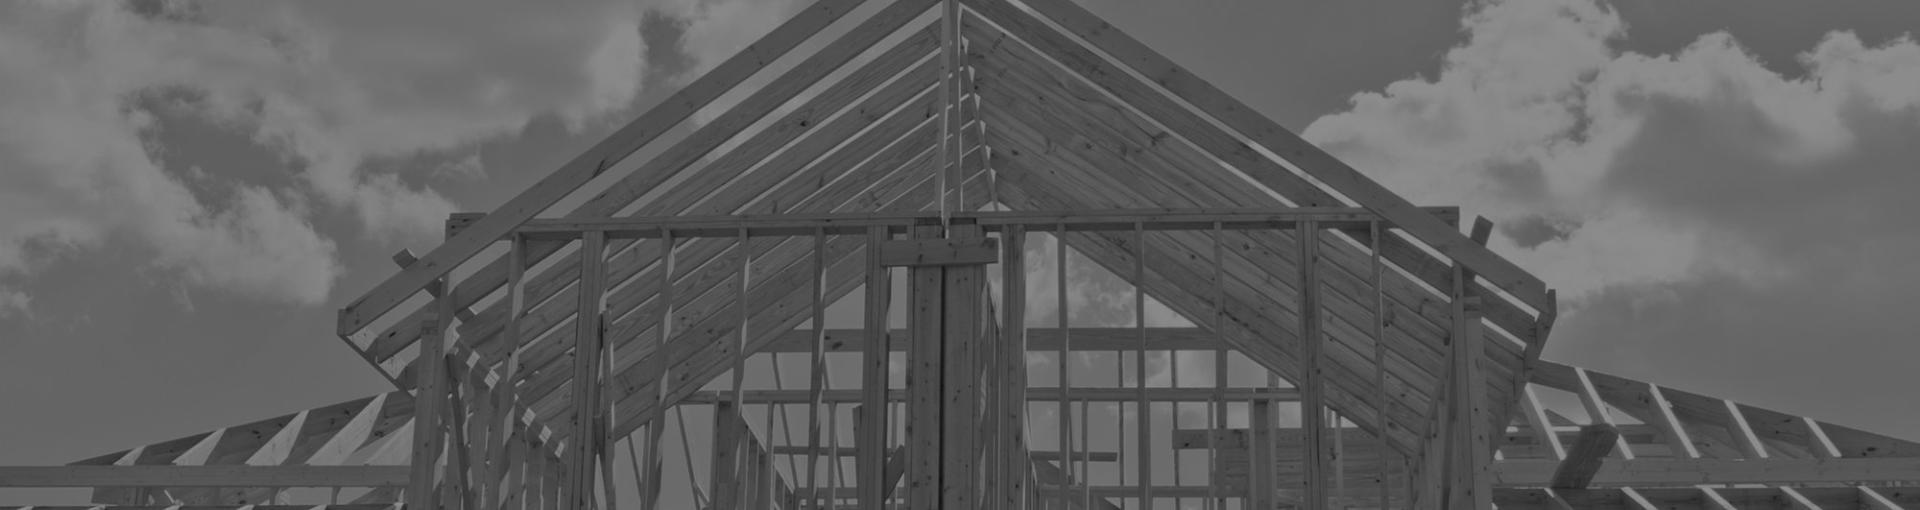 Nový web pro Konstrukce střech za 2 dny Rychlost a kvalita dostupná pro každého